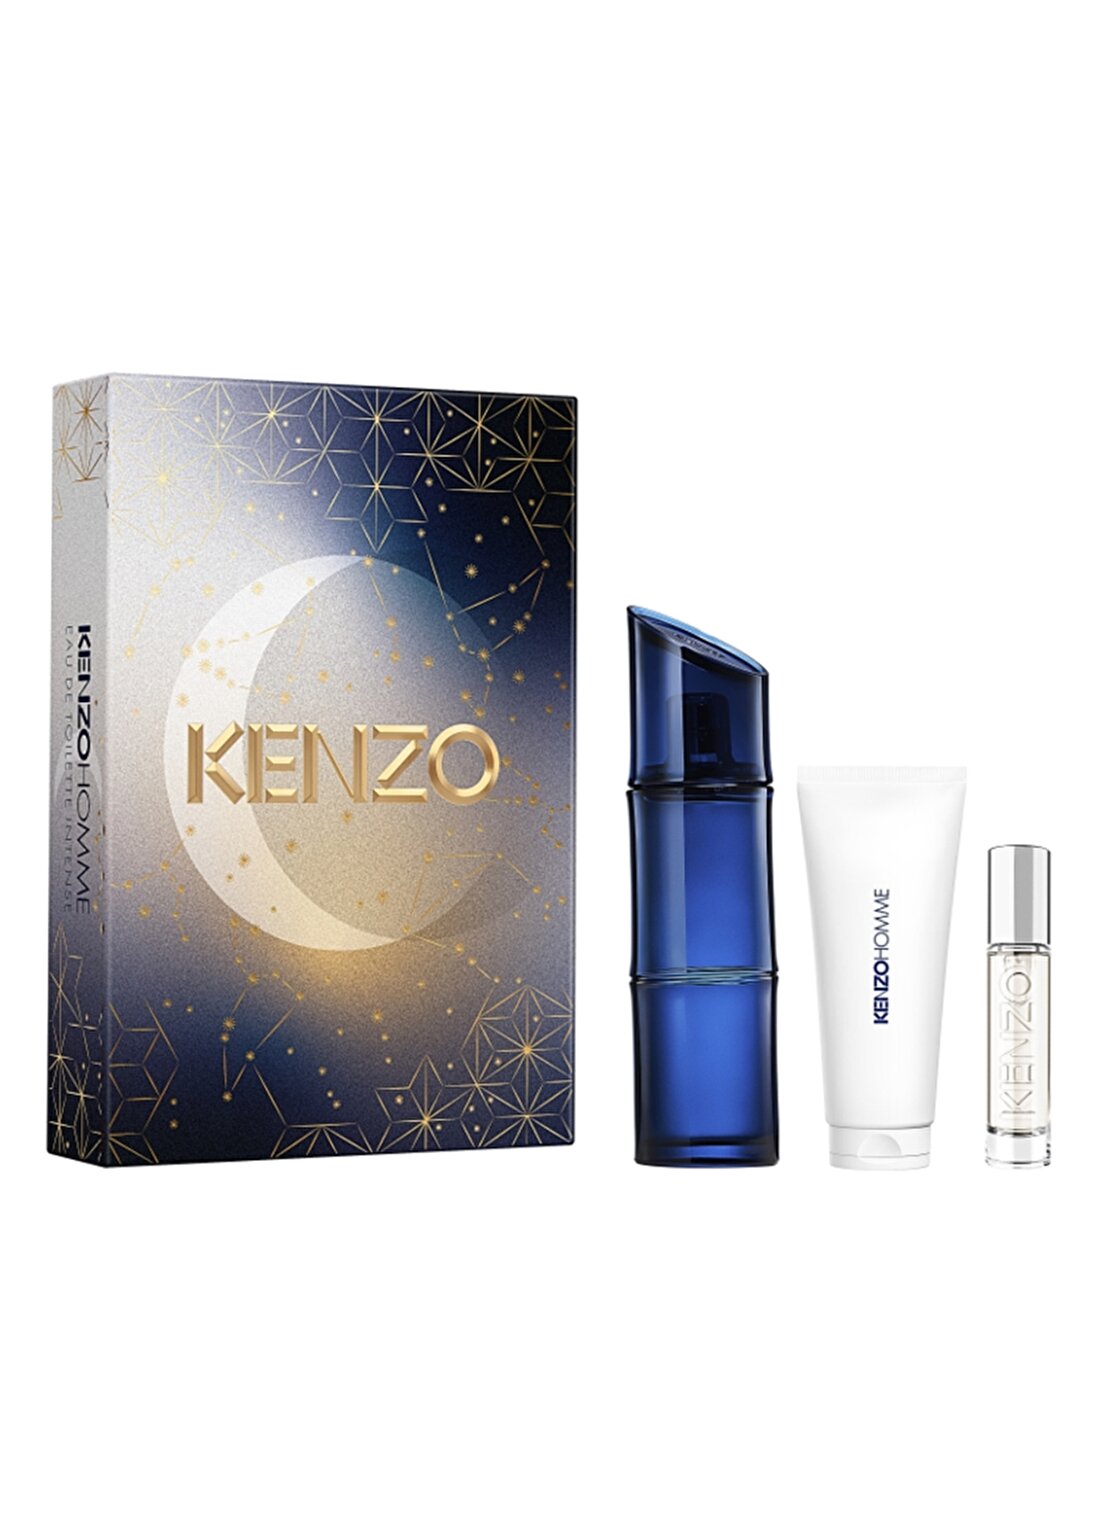 Kenzo Homme EDT Parfüm Set